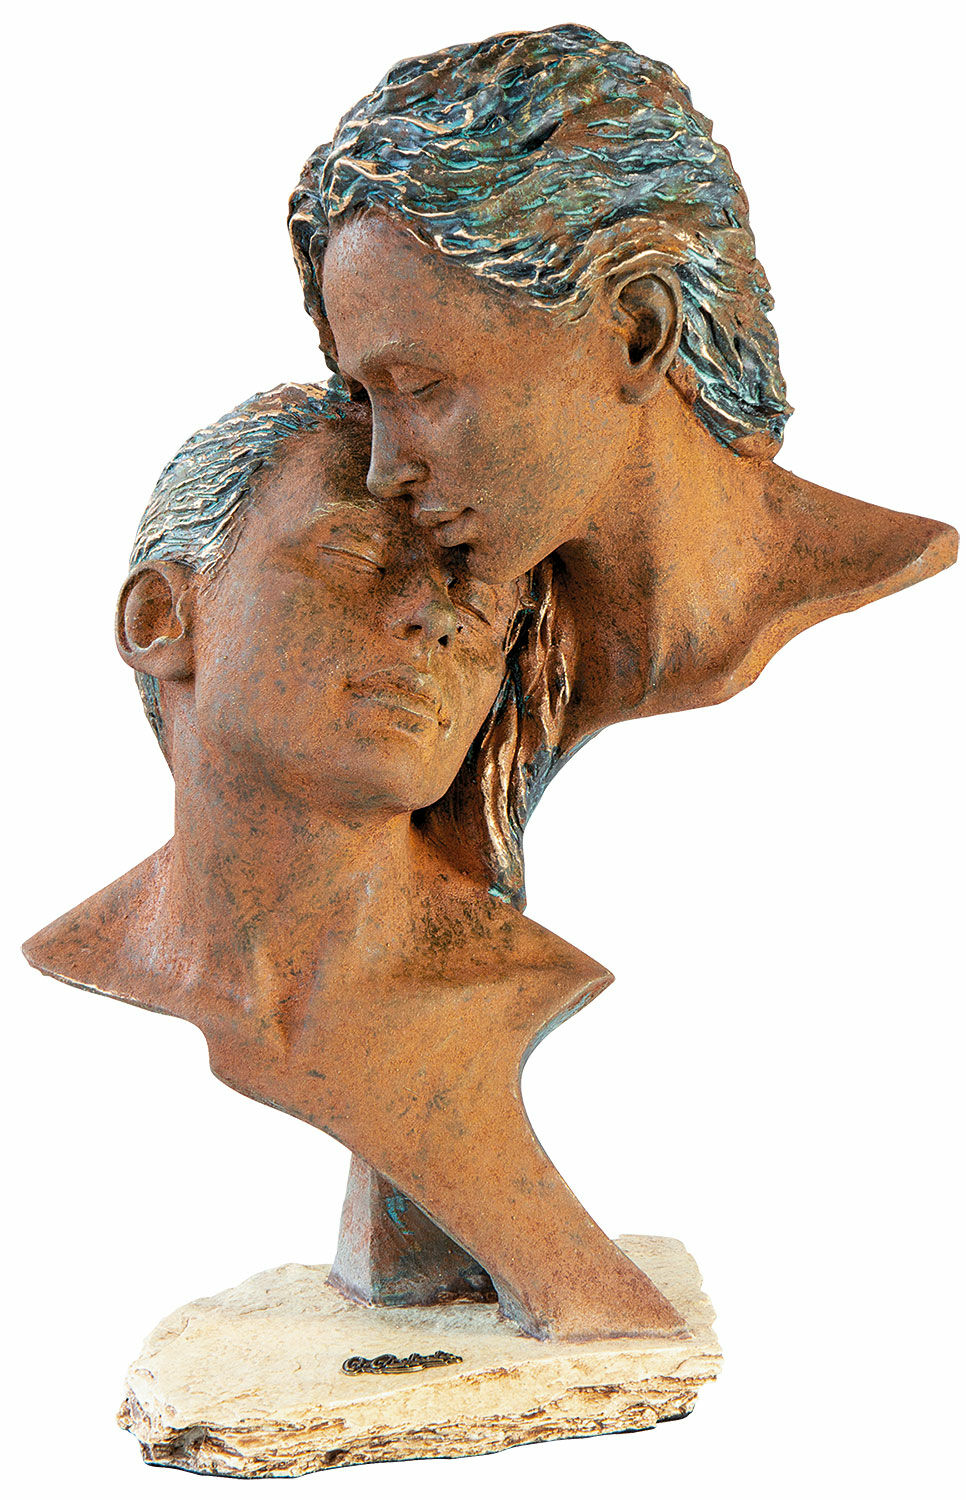 Skulptur "Quality Time Together", kunststen von Angeles Anglada